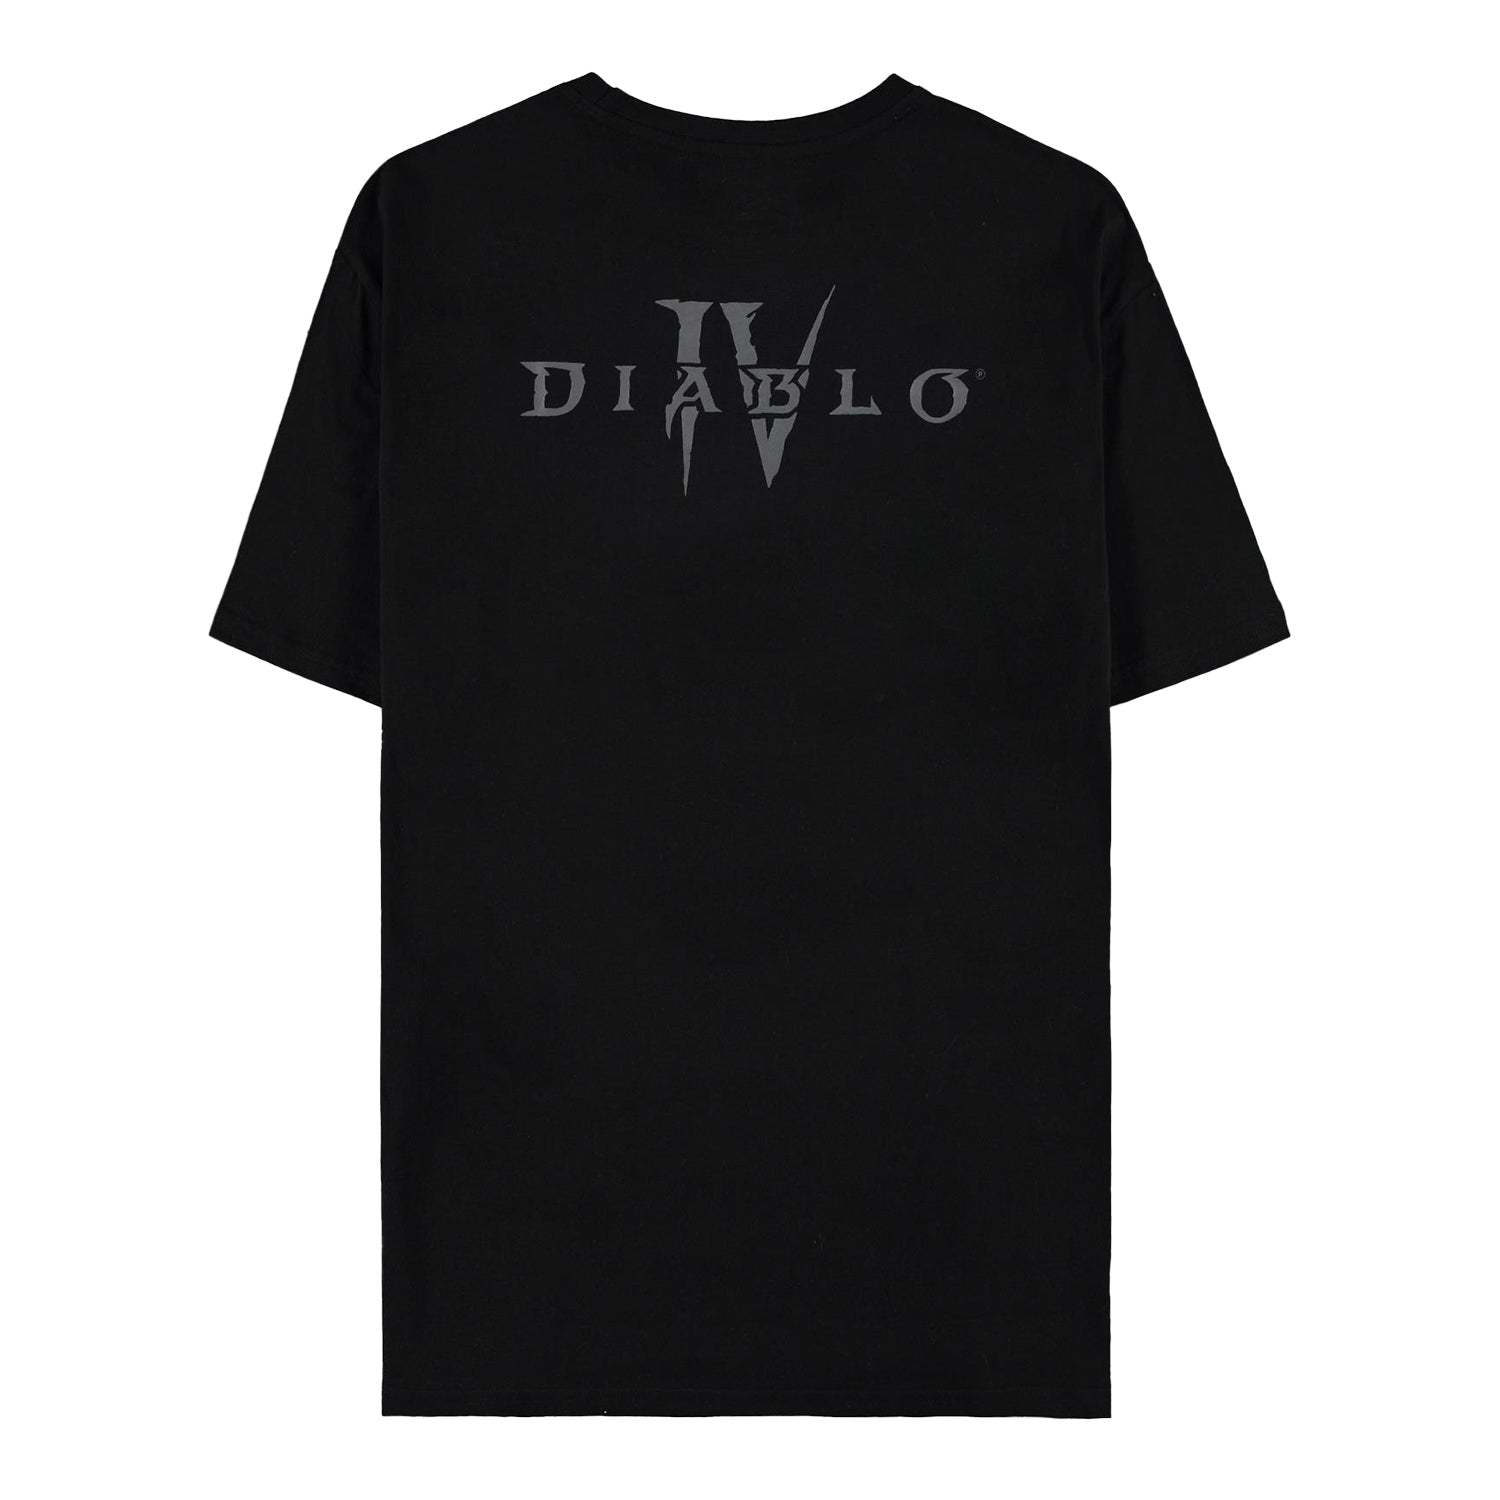 Diablo IV Tree of Life Black T-Shirt - Back View